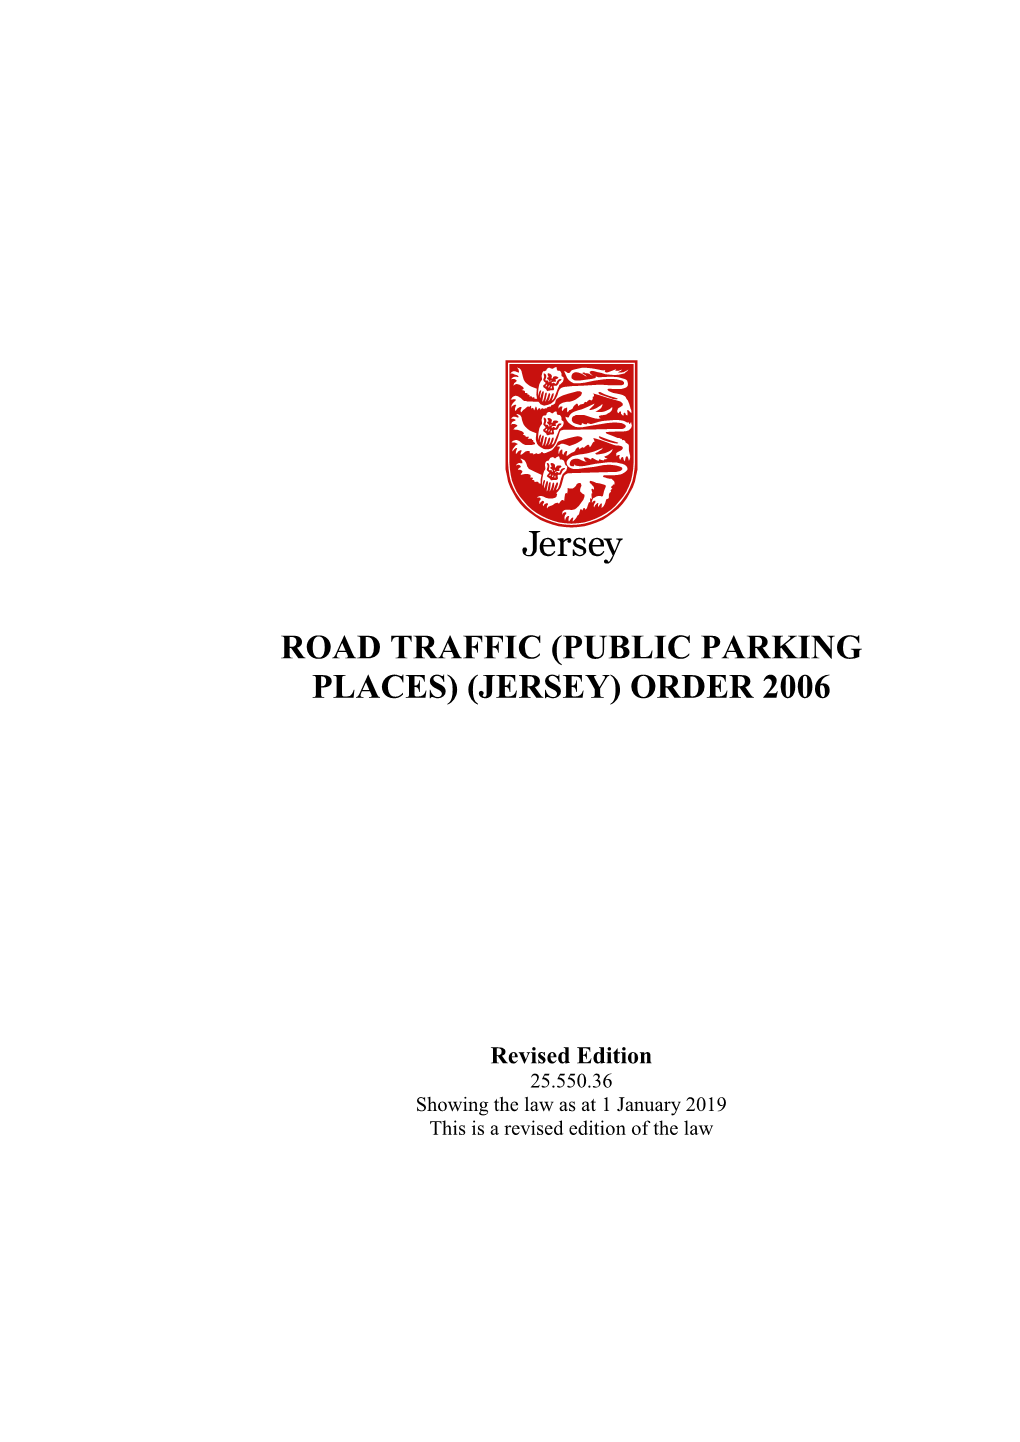 Public Parking Places) (Jersey) Order 2006